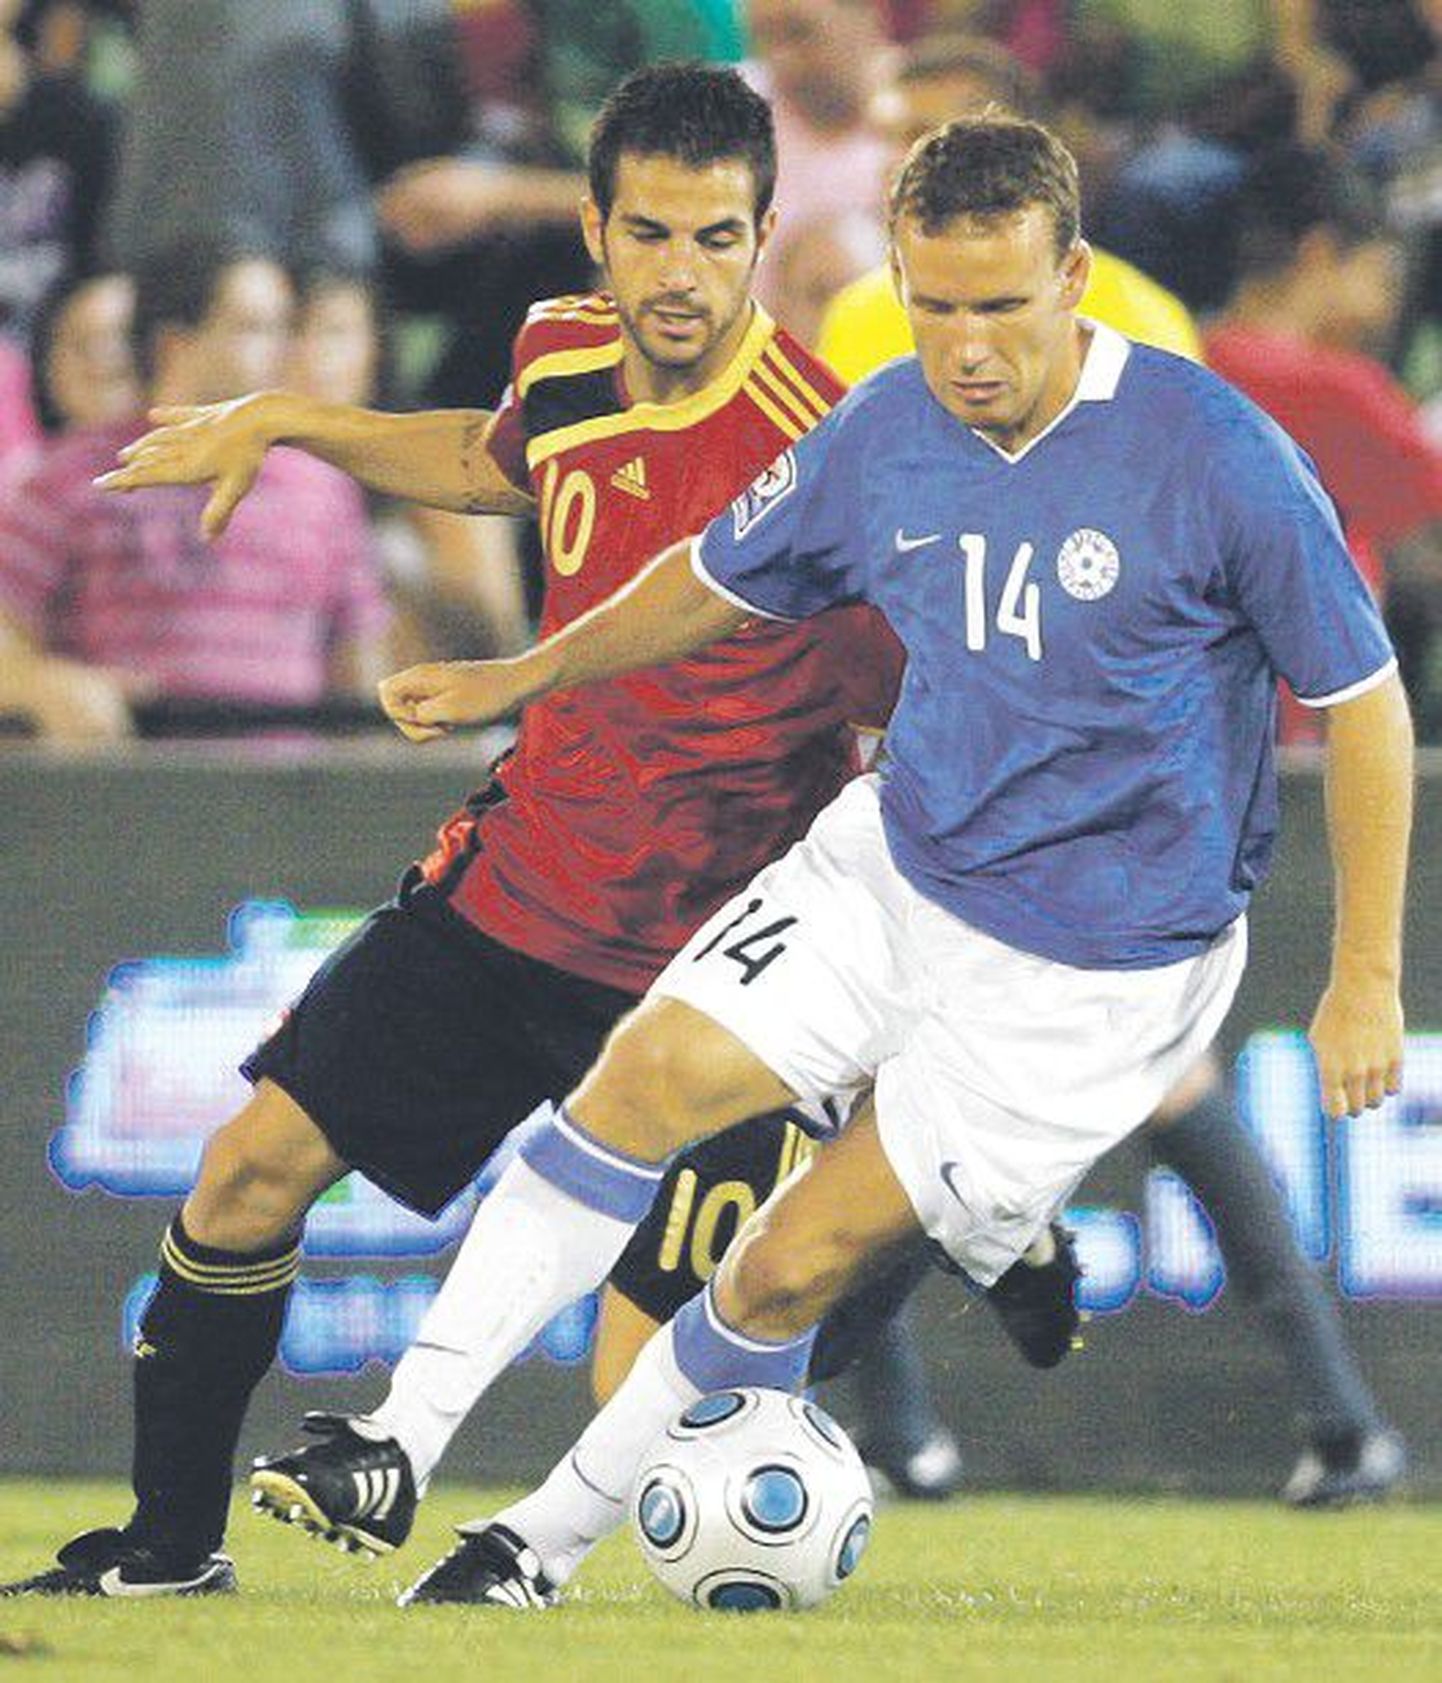 Константин Васильев (справа) ведет борьбу за мяч с полузащитником сборной Испании Франсеском Фабрегасом на отборочном матче чемпионата мира 2010 года.